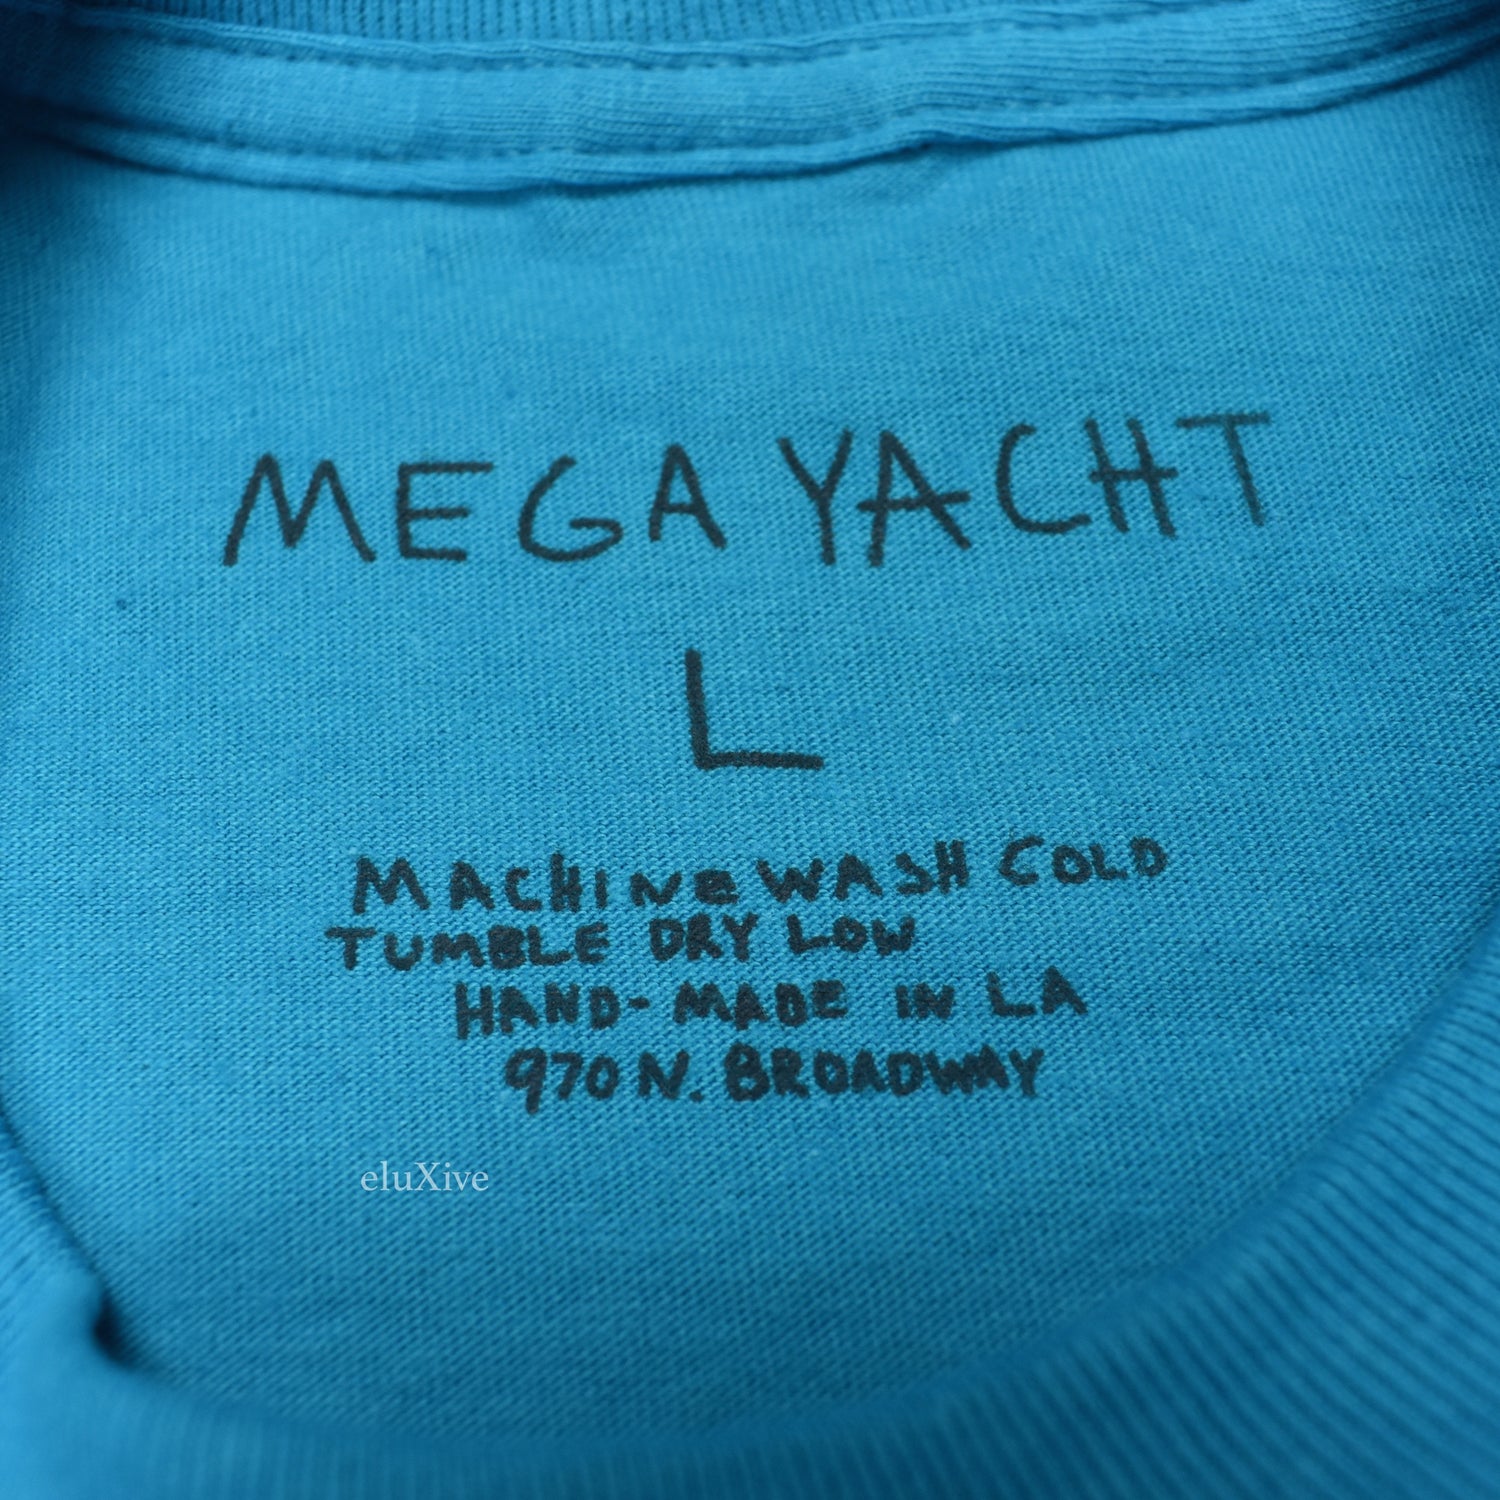 Yves saint laurent casper mega yacht shirt - Dalatshirt